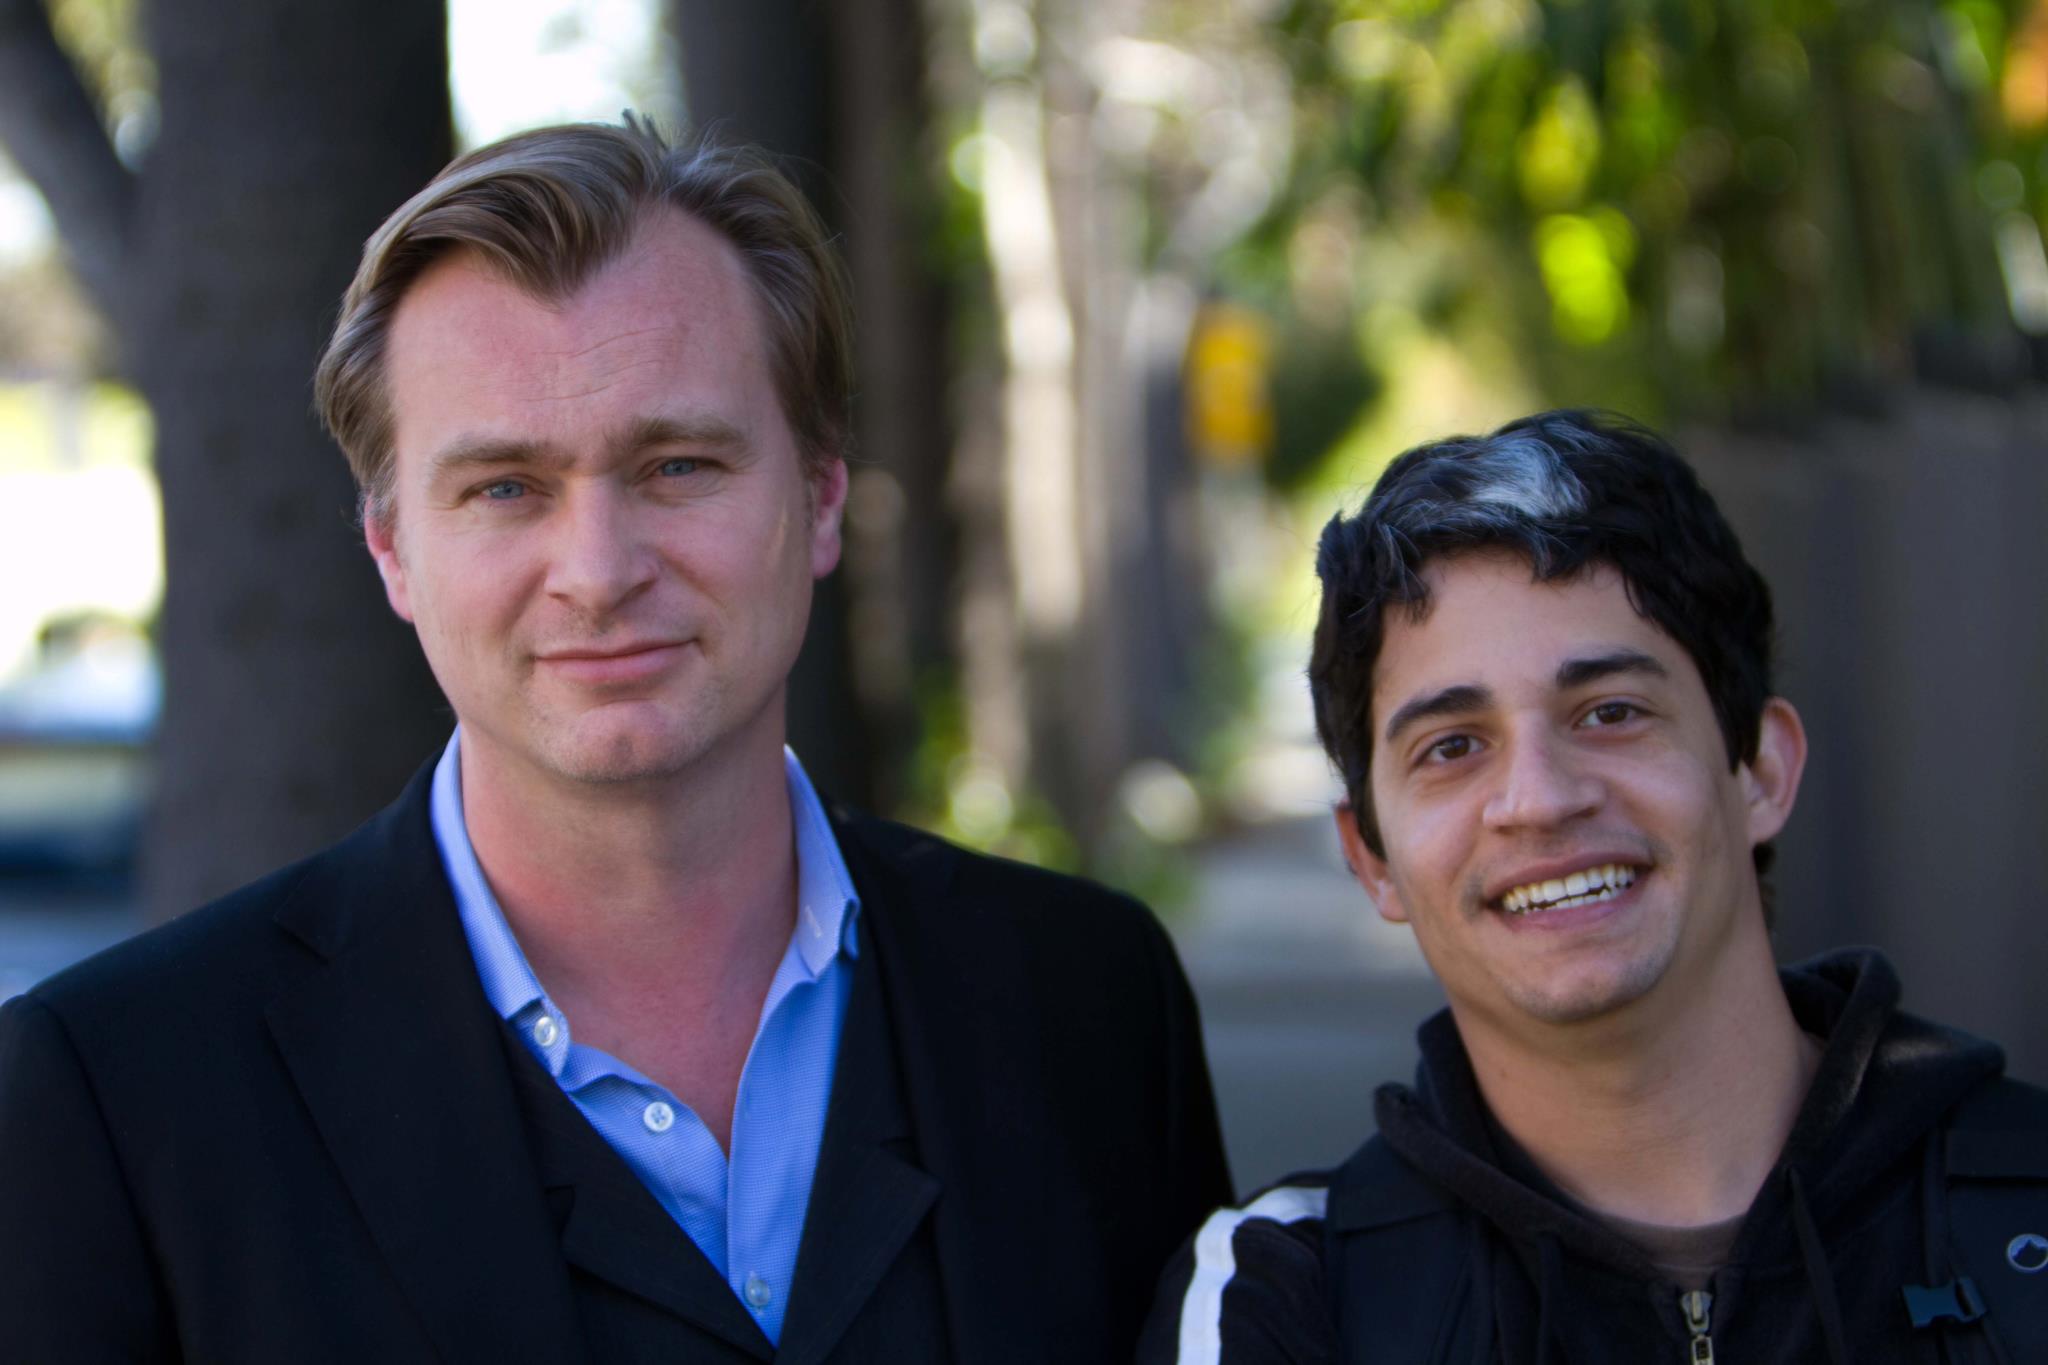 Once in Hollywood, I met filmmaker/director, Christopher Nolan.